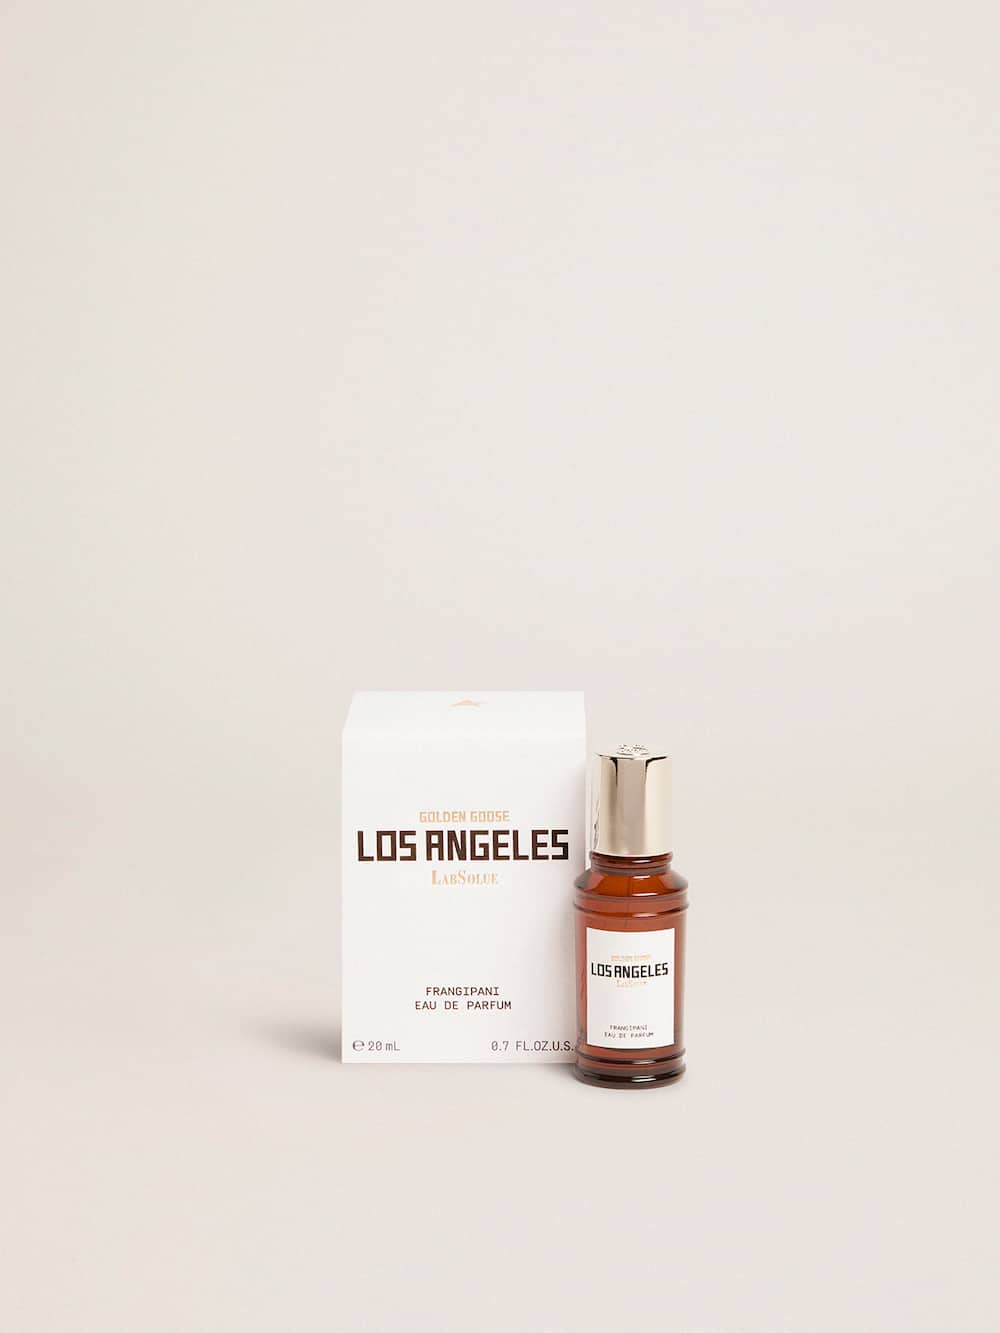 Golden Goose - Los Angeles Essence Frangipanier Eau de Parfum 20 ml in 